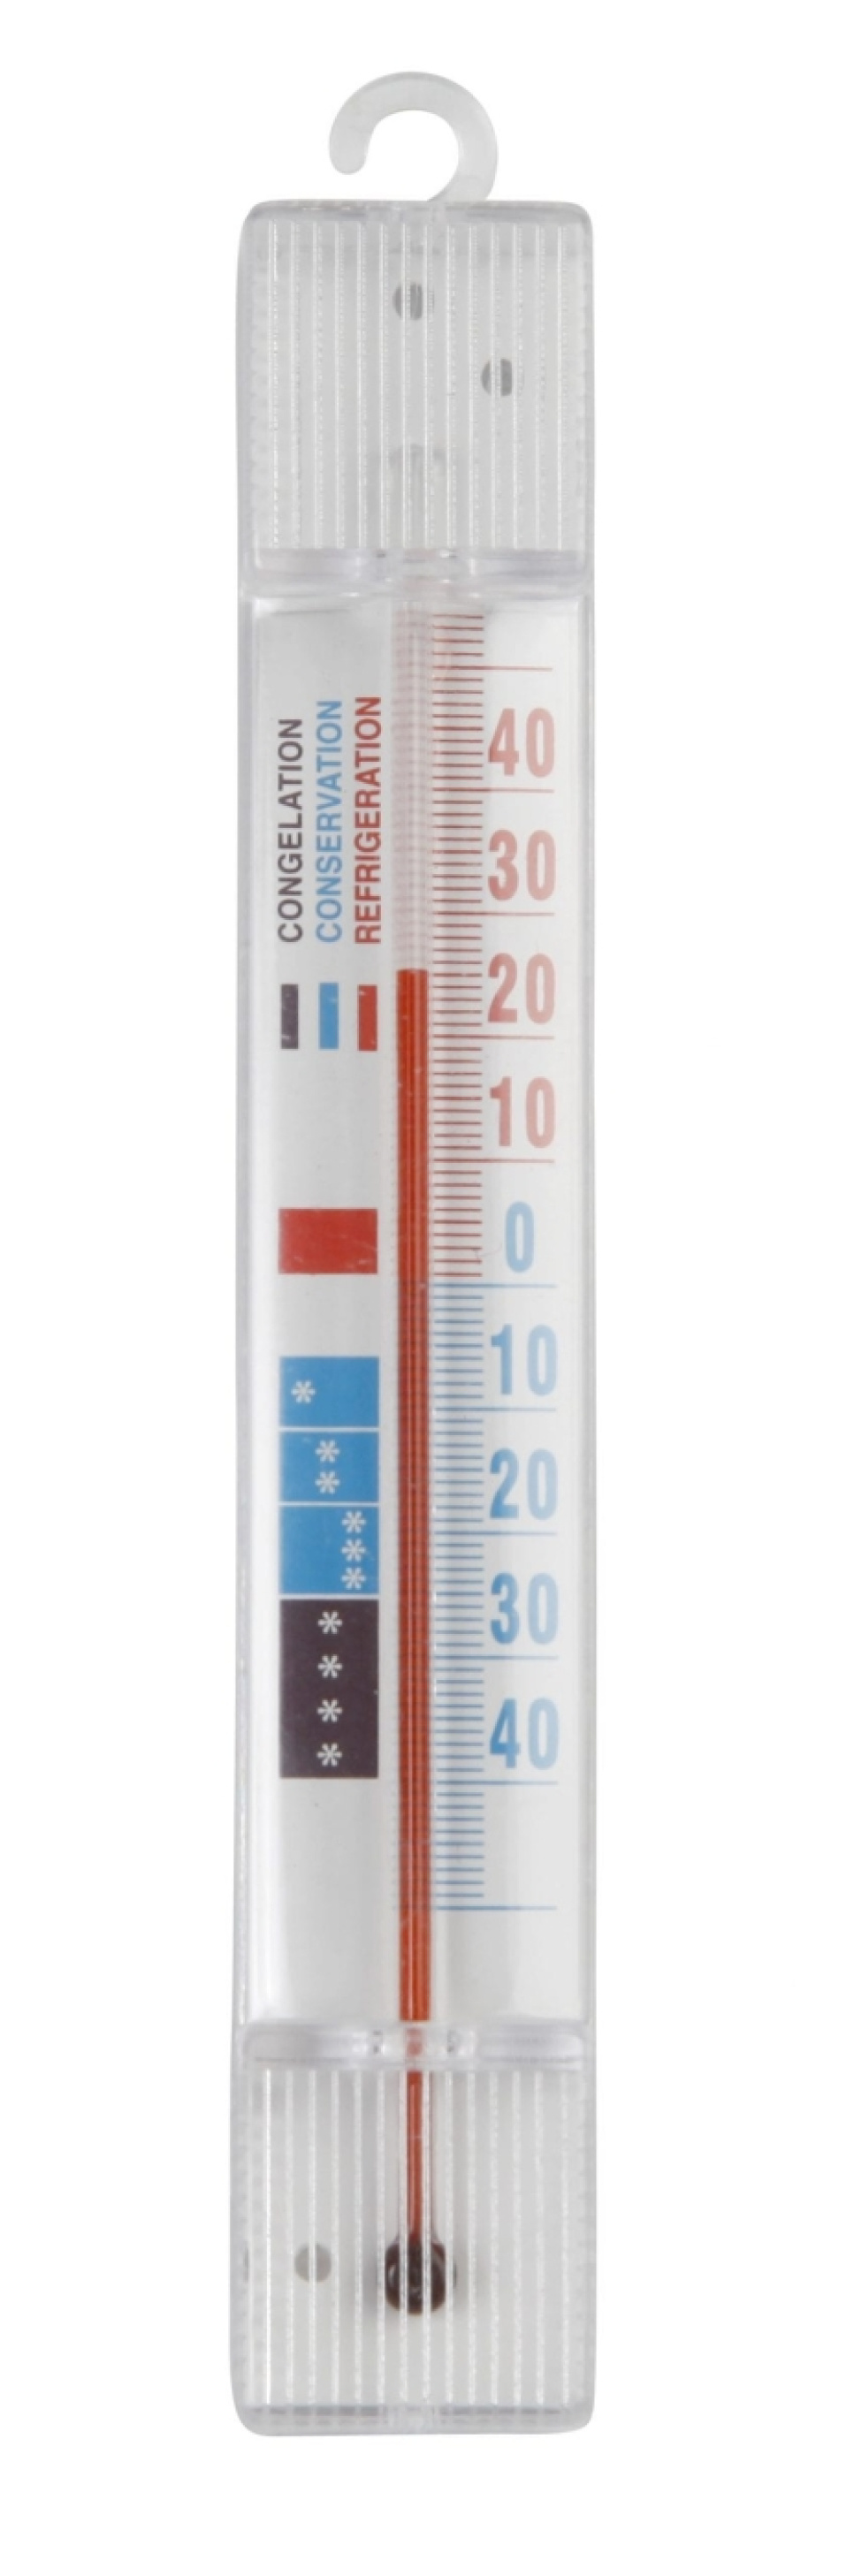 Frystermometer i gruppen Matlaging / Målere / Kjøkkentermometer / Enkle termometre hos The Kitchen Lab (1071-10156)